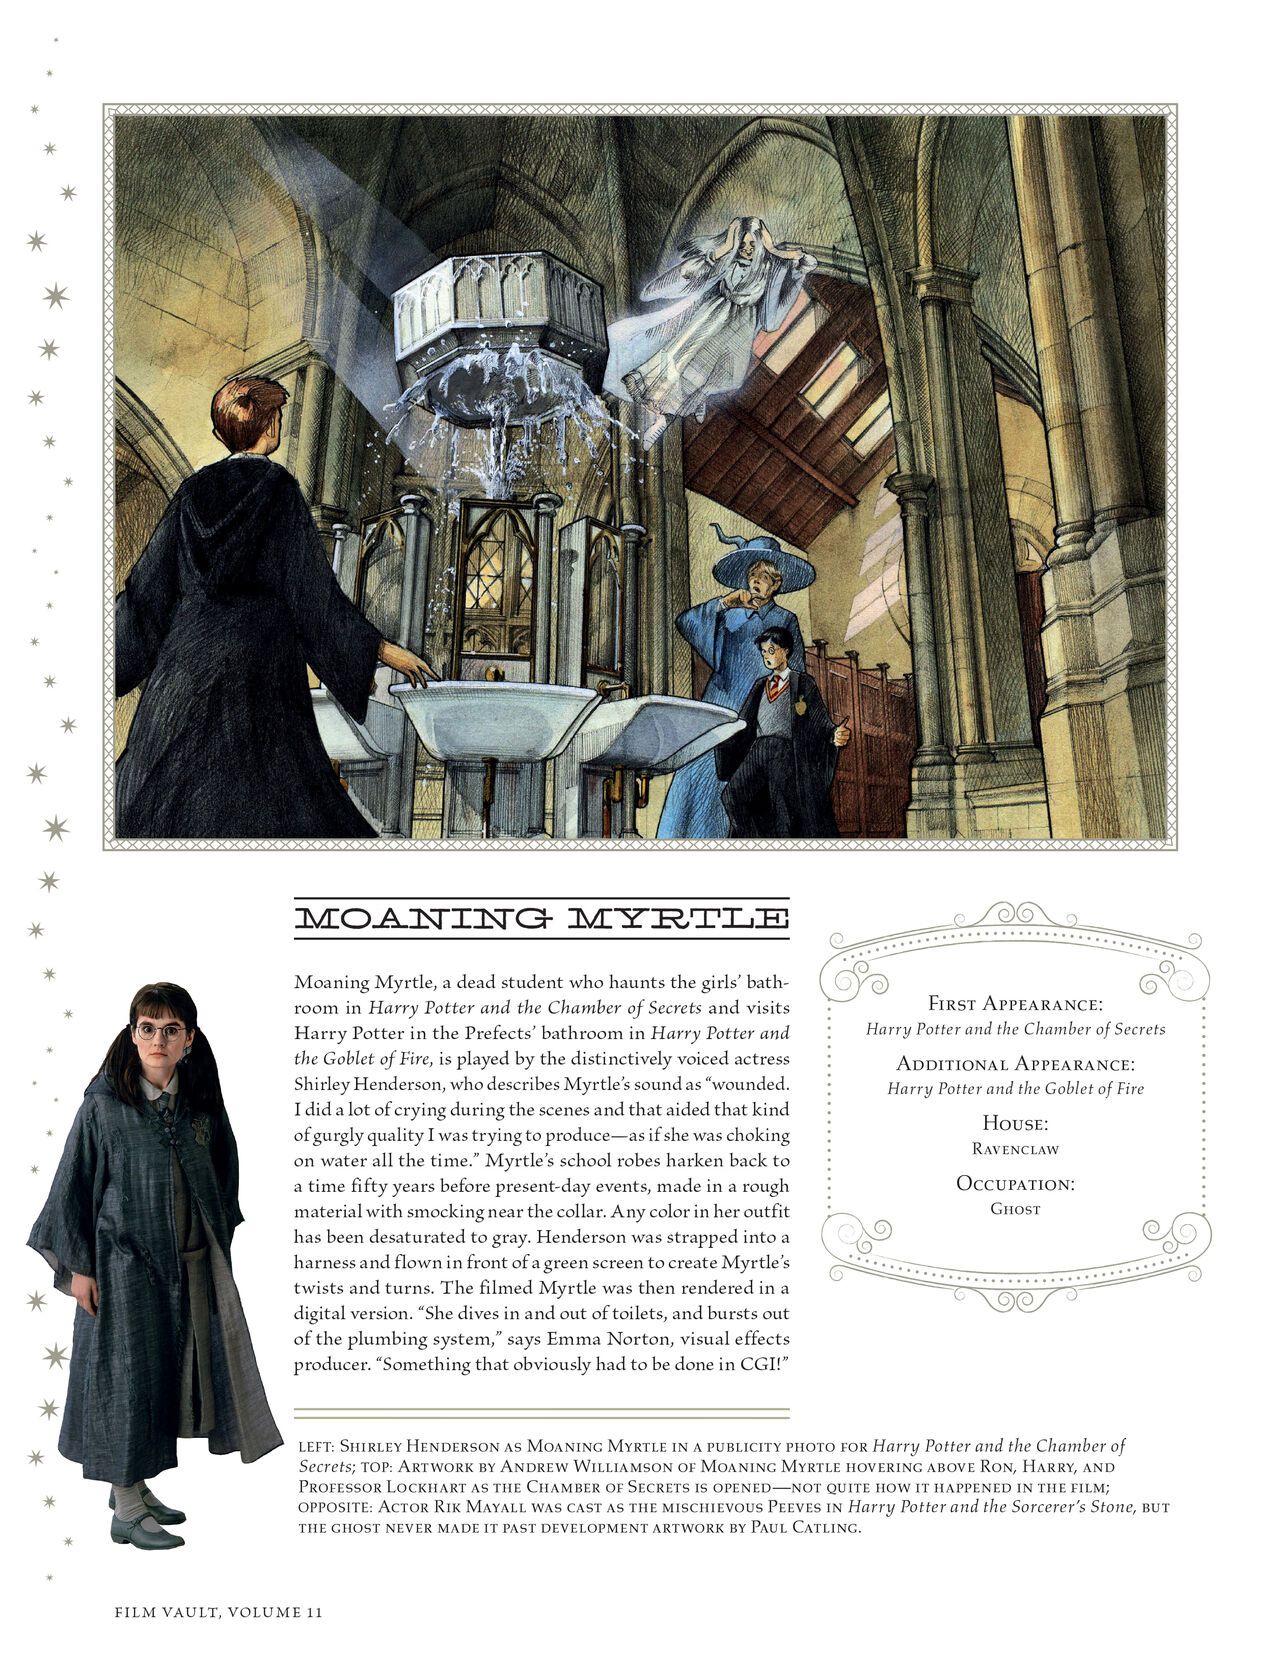 Harry Potter - Film Vault v11 - Hogwarts Professors and Staff 62